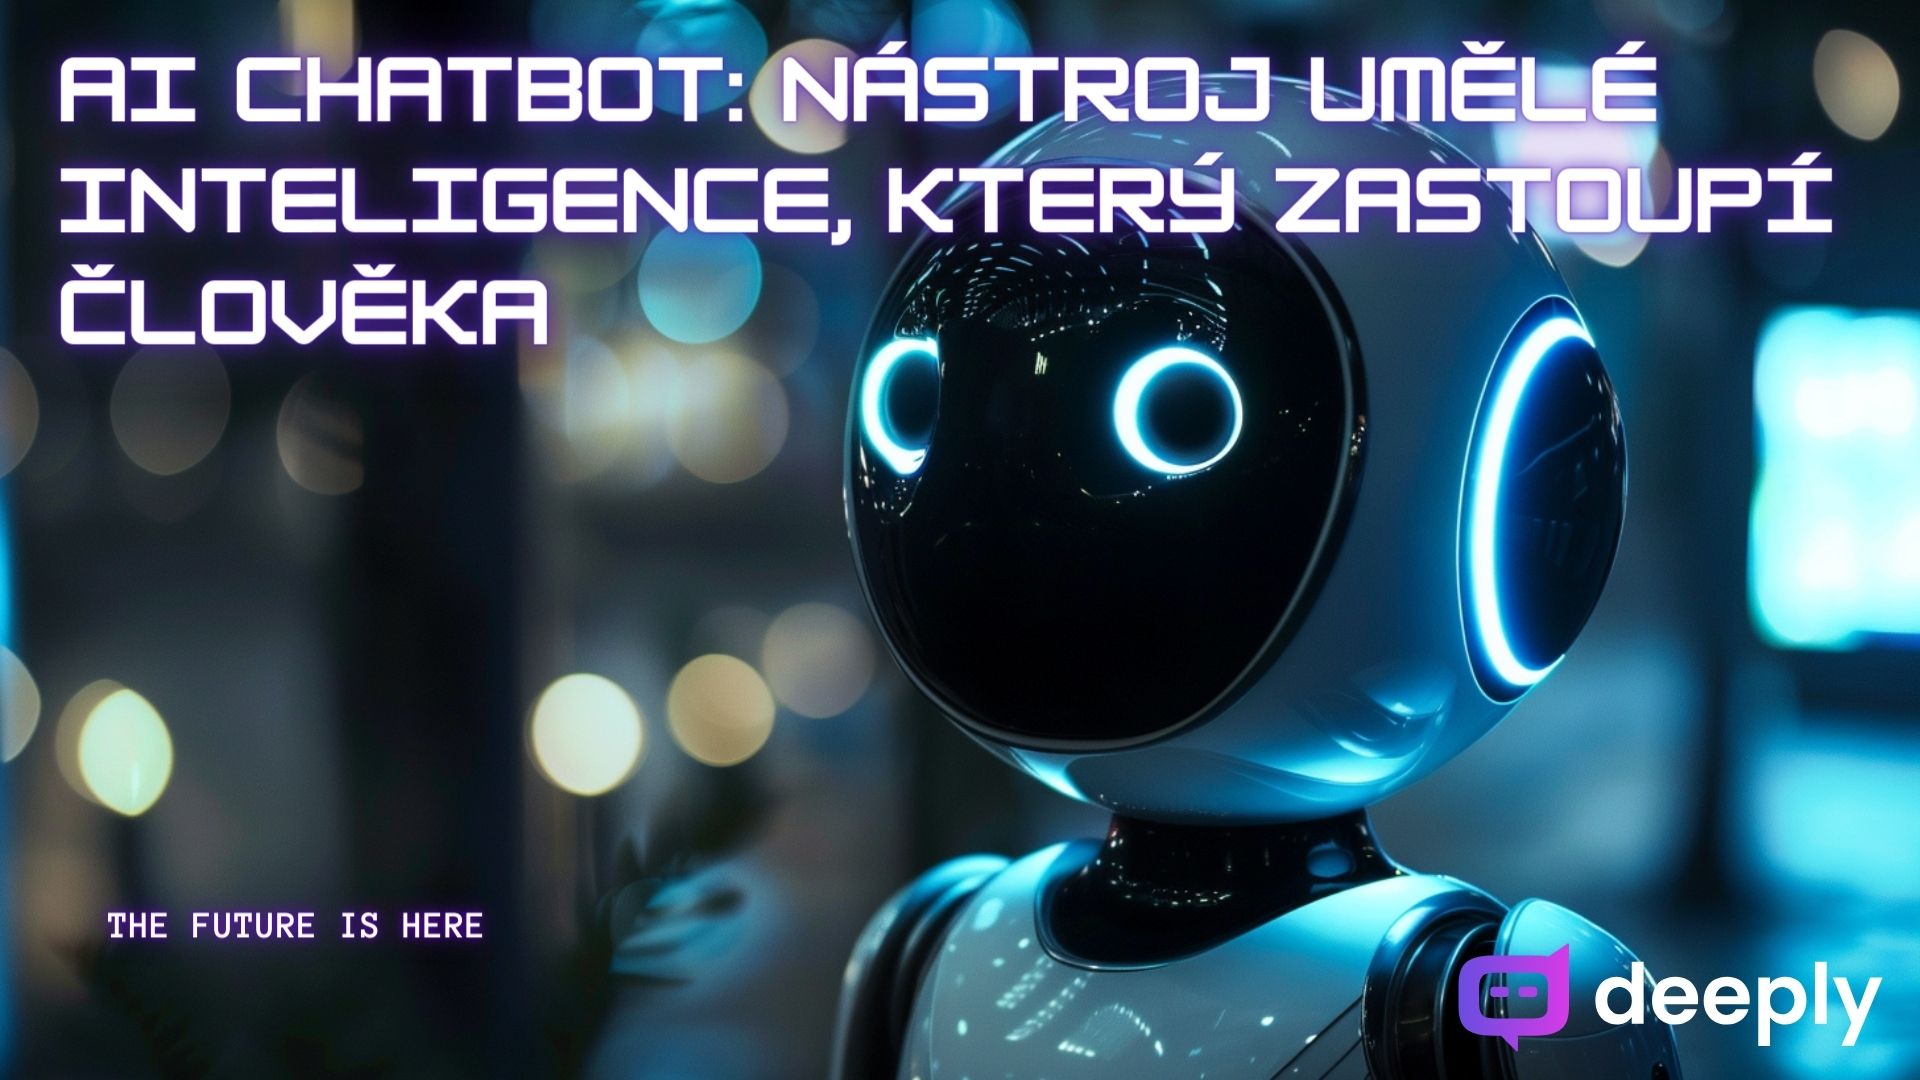 AI chatbot: Nástroj umělé inteligence, který zastoupí člověka